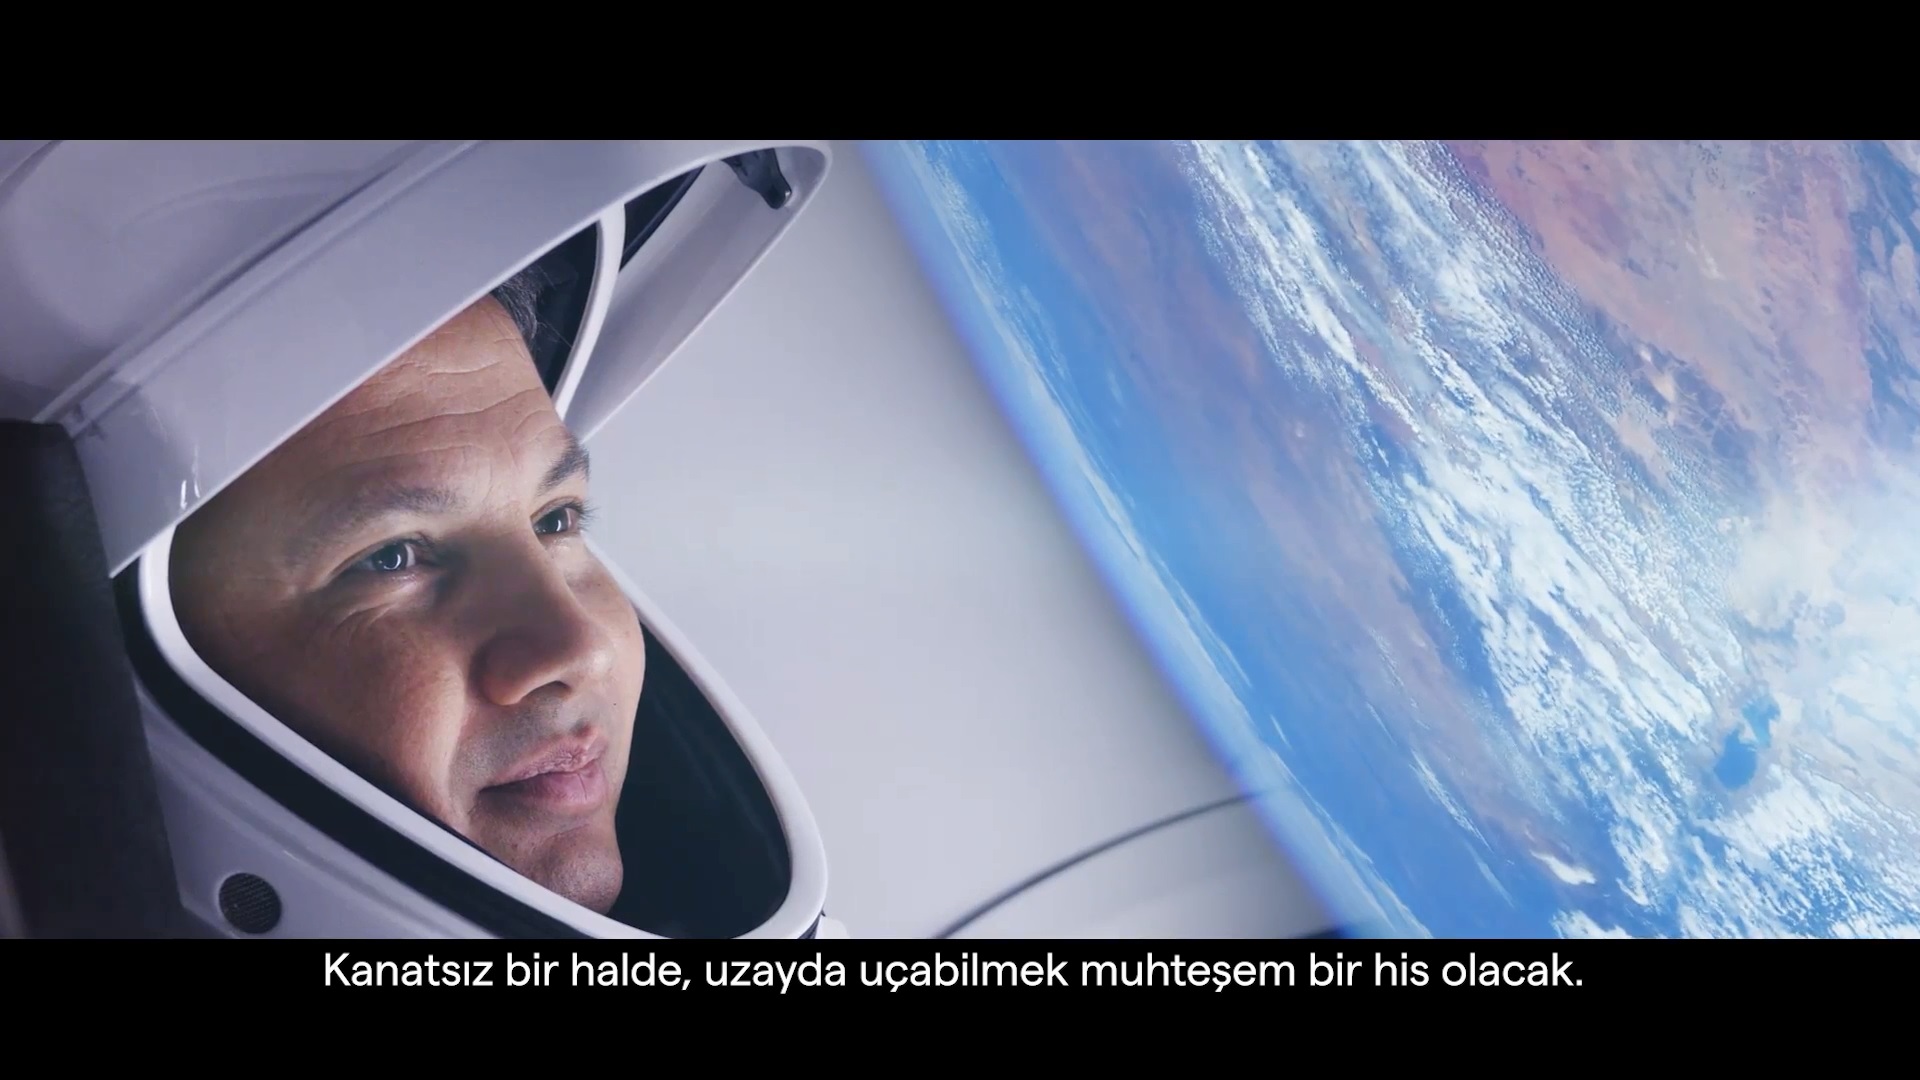 turkiyenin-insanli-ilk-uzay-yolculugu-meydanlarda-izlenecek-4851-dhaphoto3.jpg